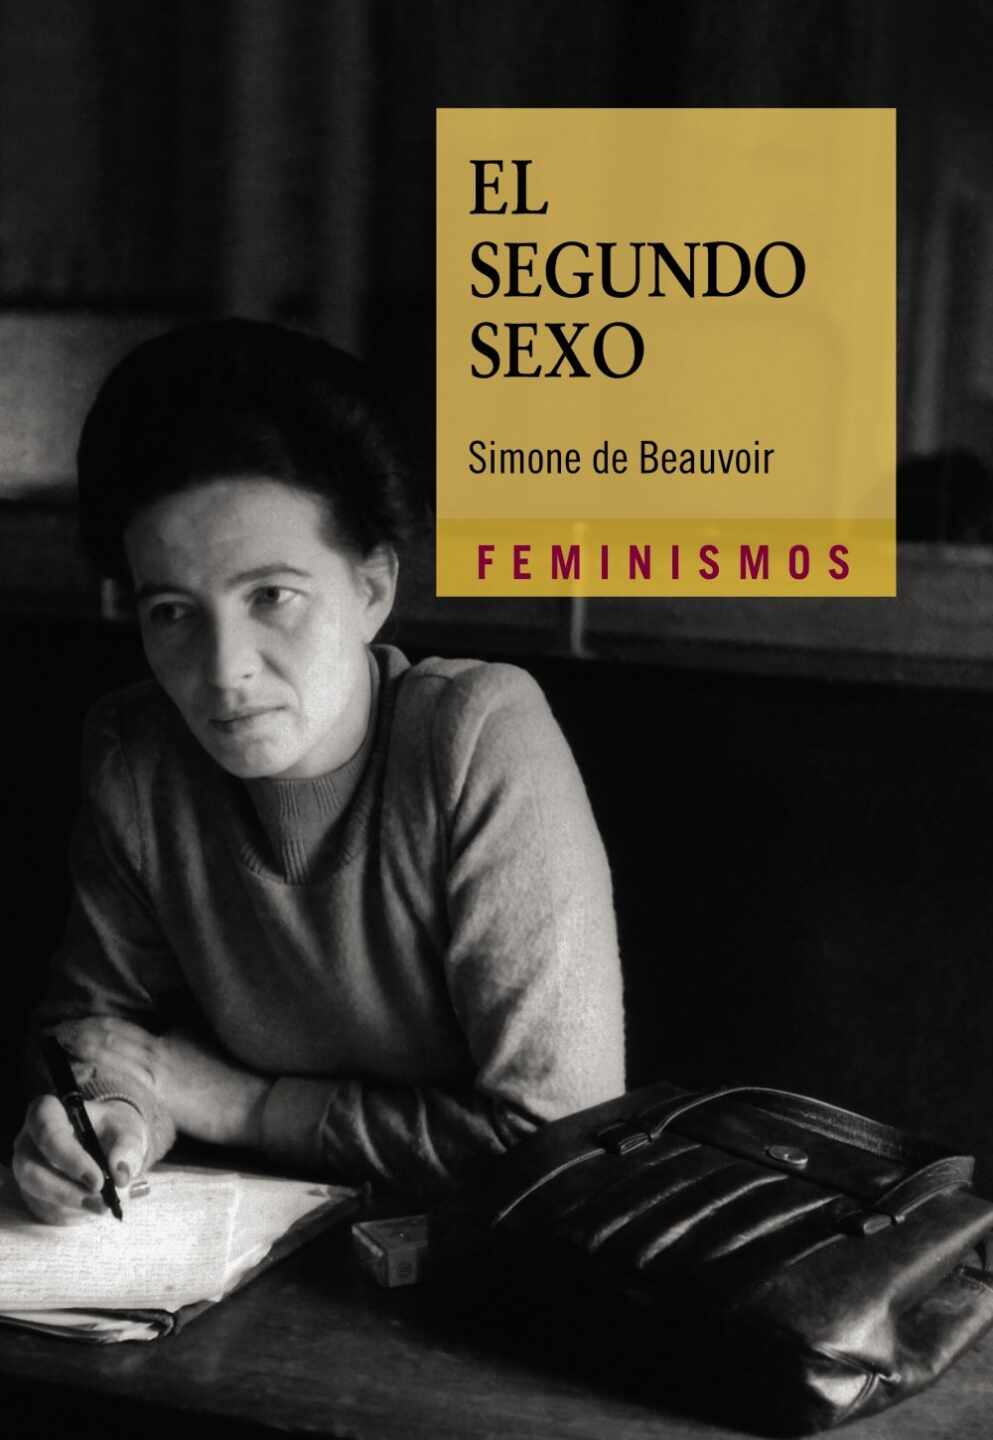 Portada del libro "El segundo sexo" de Simone de Beauvoir 